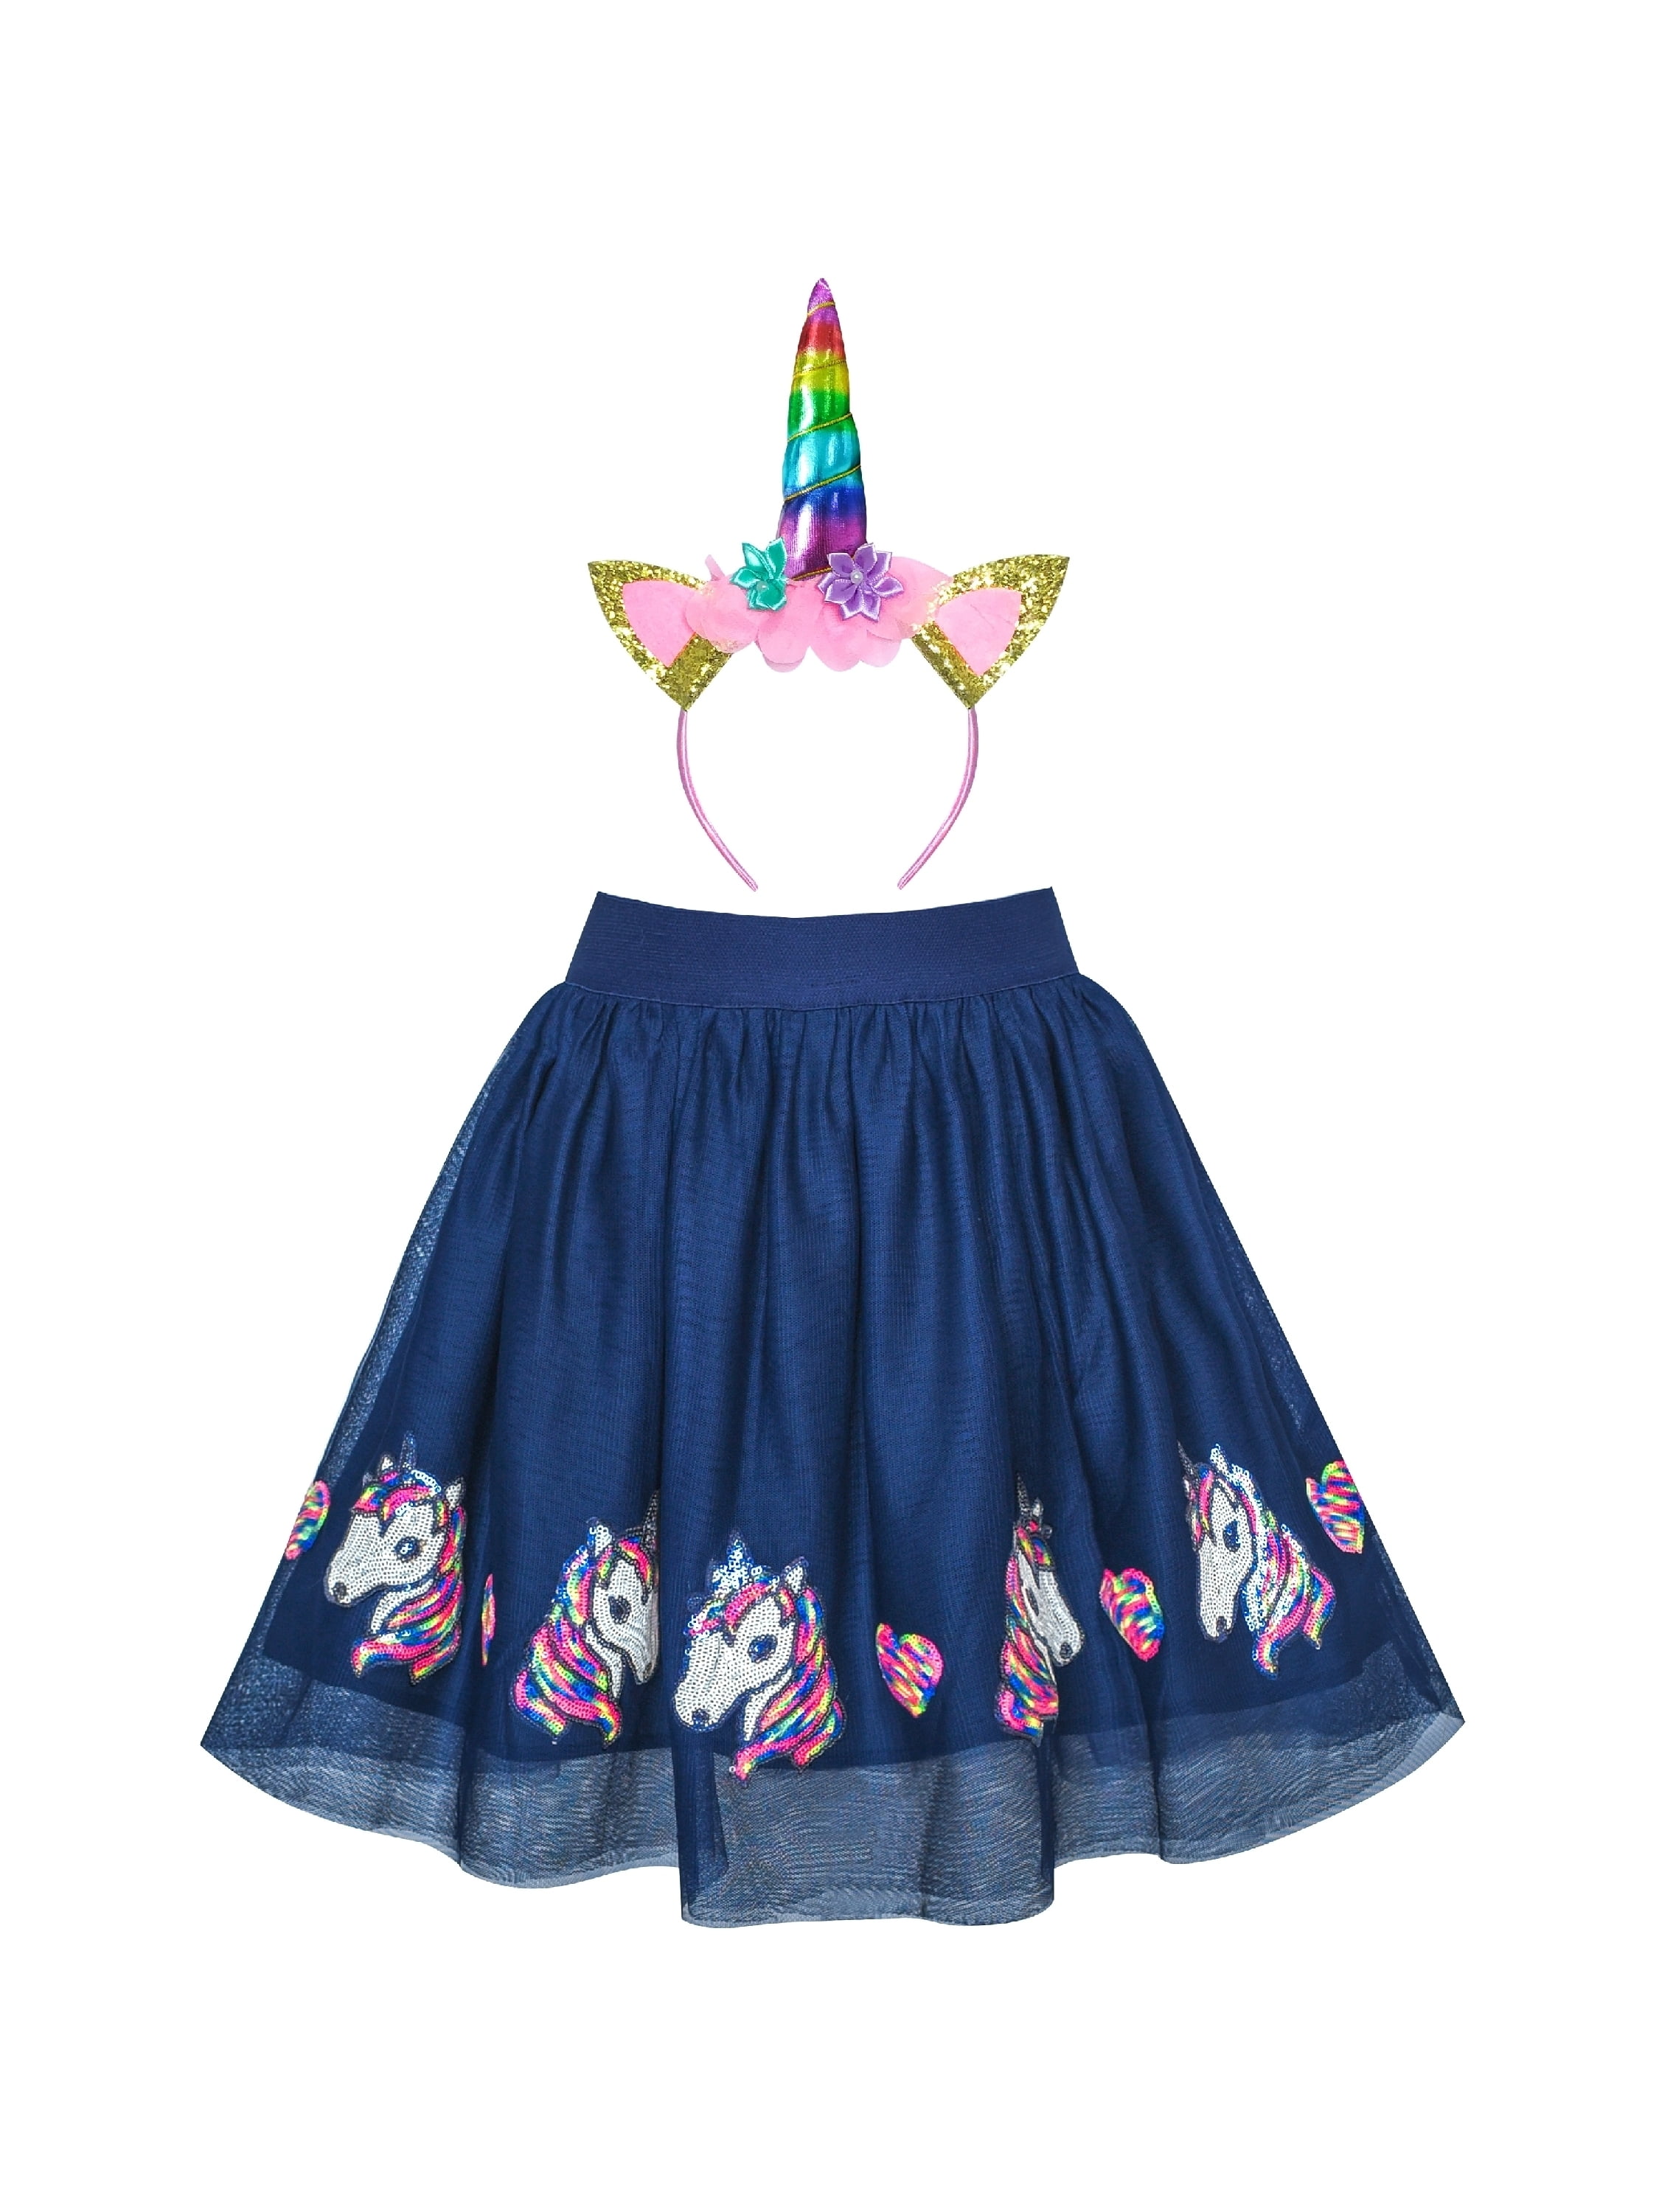 Girls Skirt Unicorn Headband Sequins Sparkling Tutu Dancing 7-8 Years ...